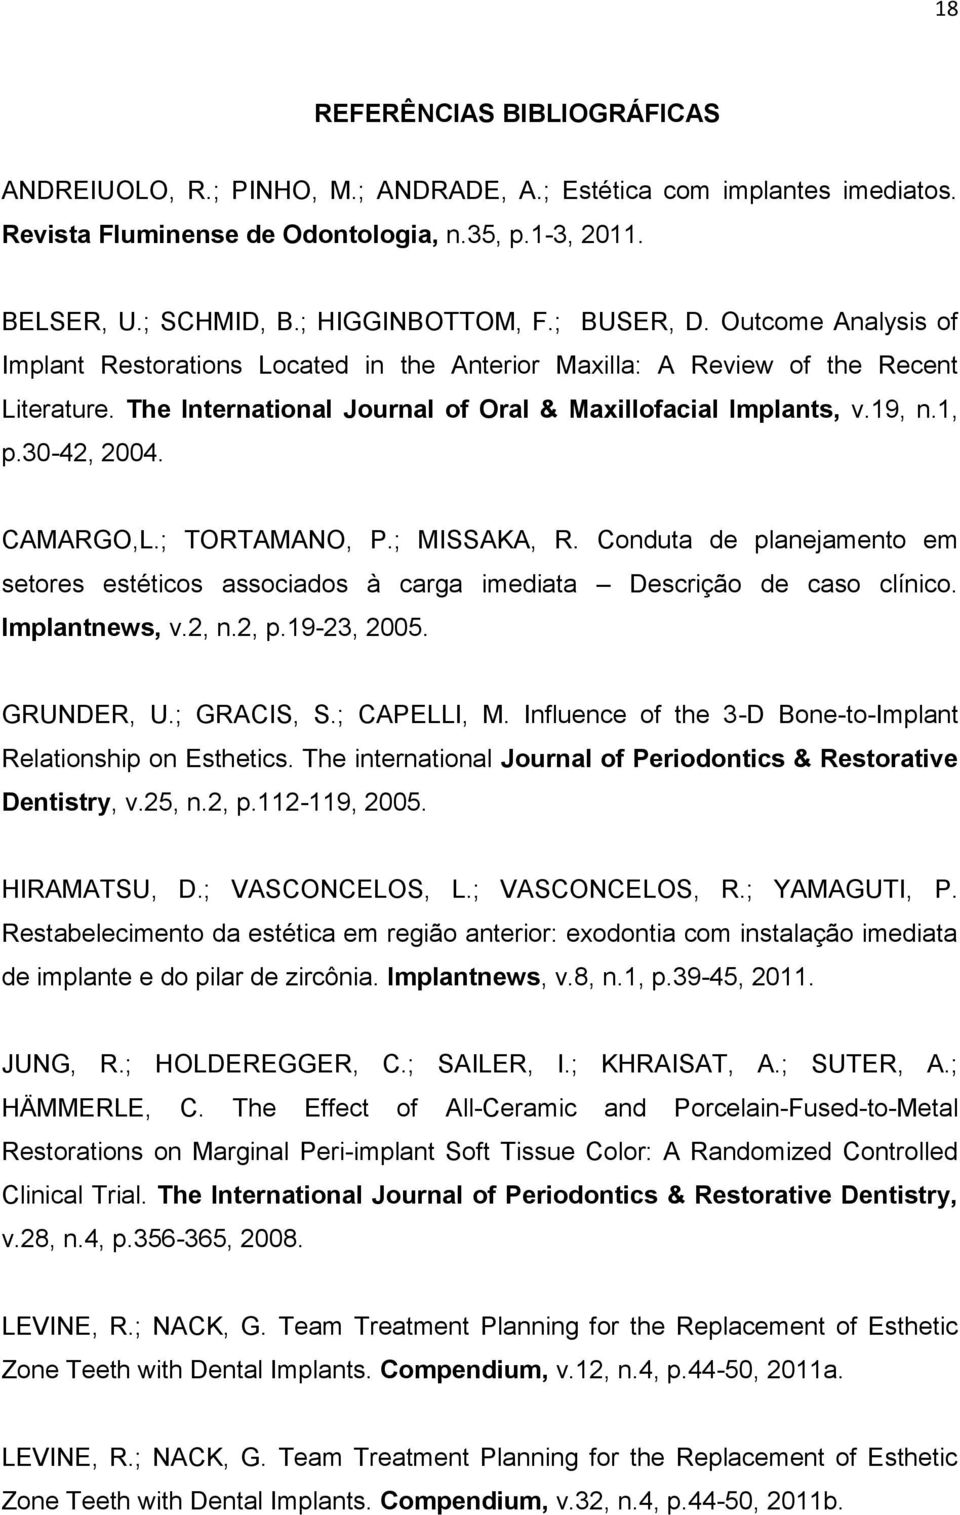 30-42, 2004. CAMARGO,L.; TORTAMANO, P.; MISSAKA, R. Conduta de planejamento em setores estéticos associados à carga imediata Descrição de caso clínico. Implantnews, v.2, n.2, p.19-23, 2005.